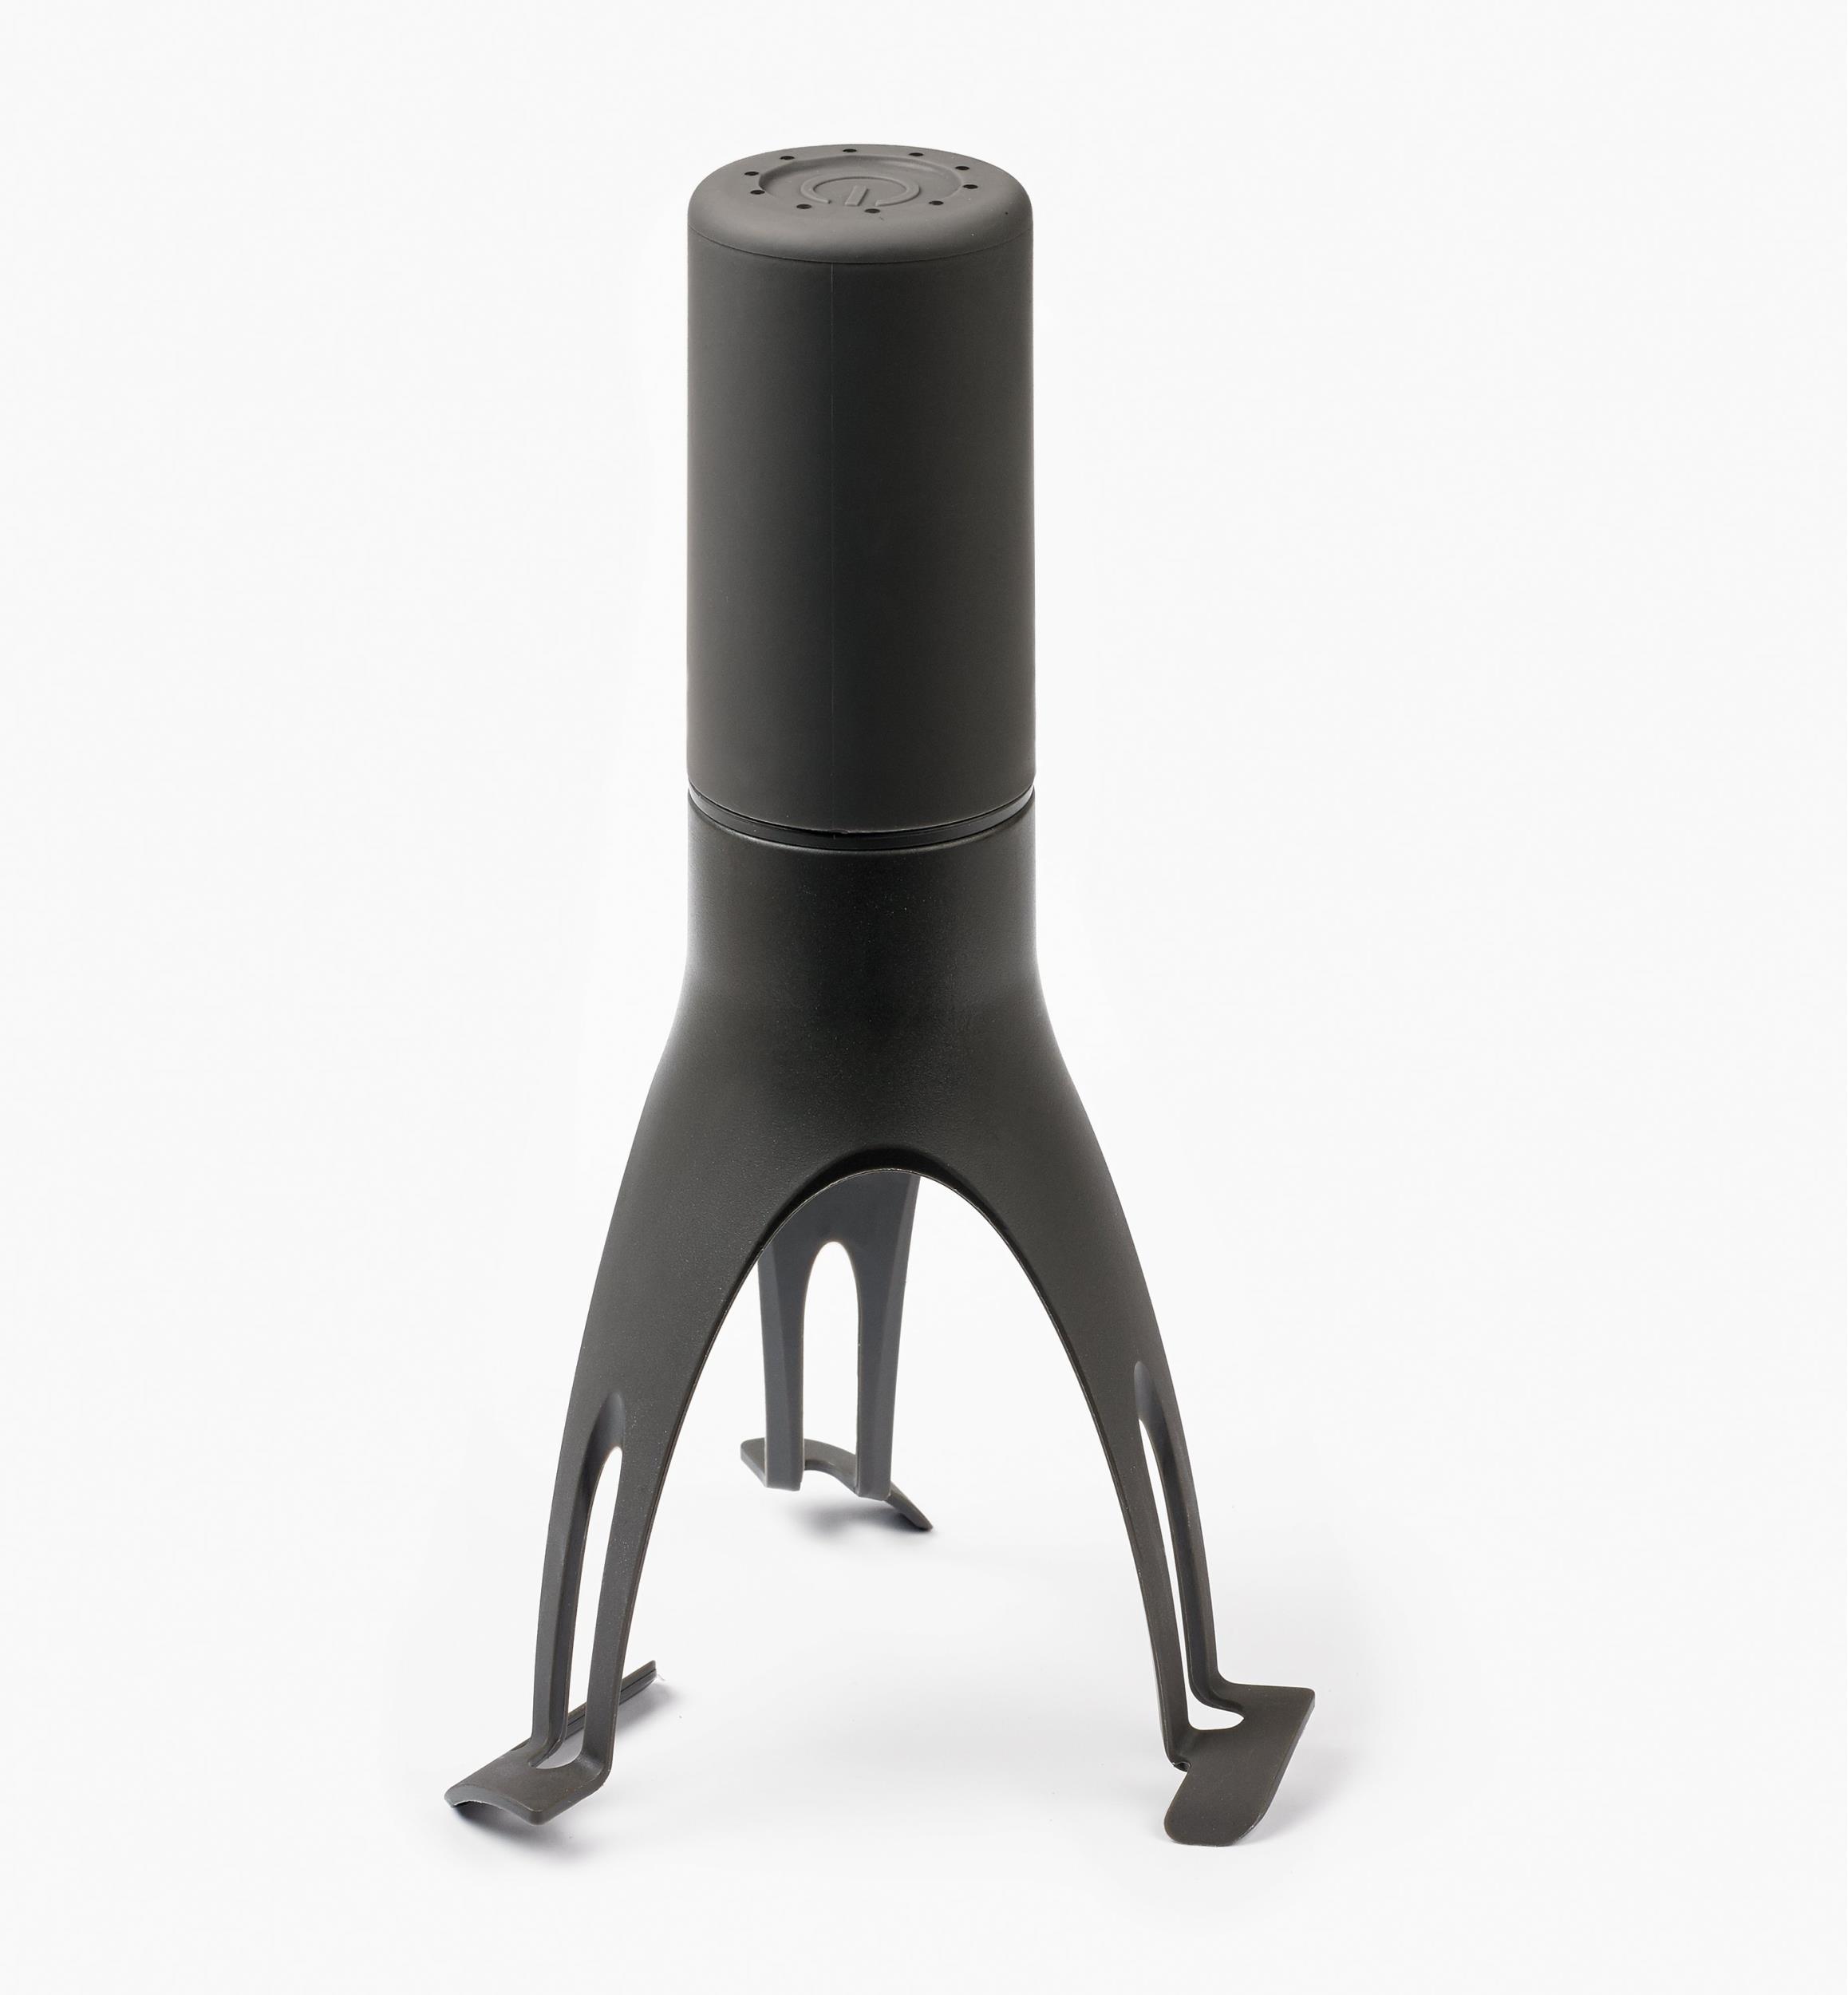 Uutensil Stirr - The Unique Automatic Pan Stirrer - Longer Nylon Legs, Grey